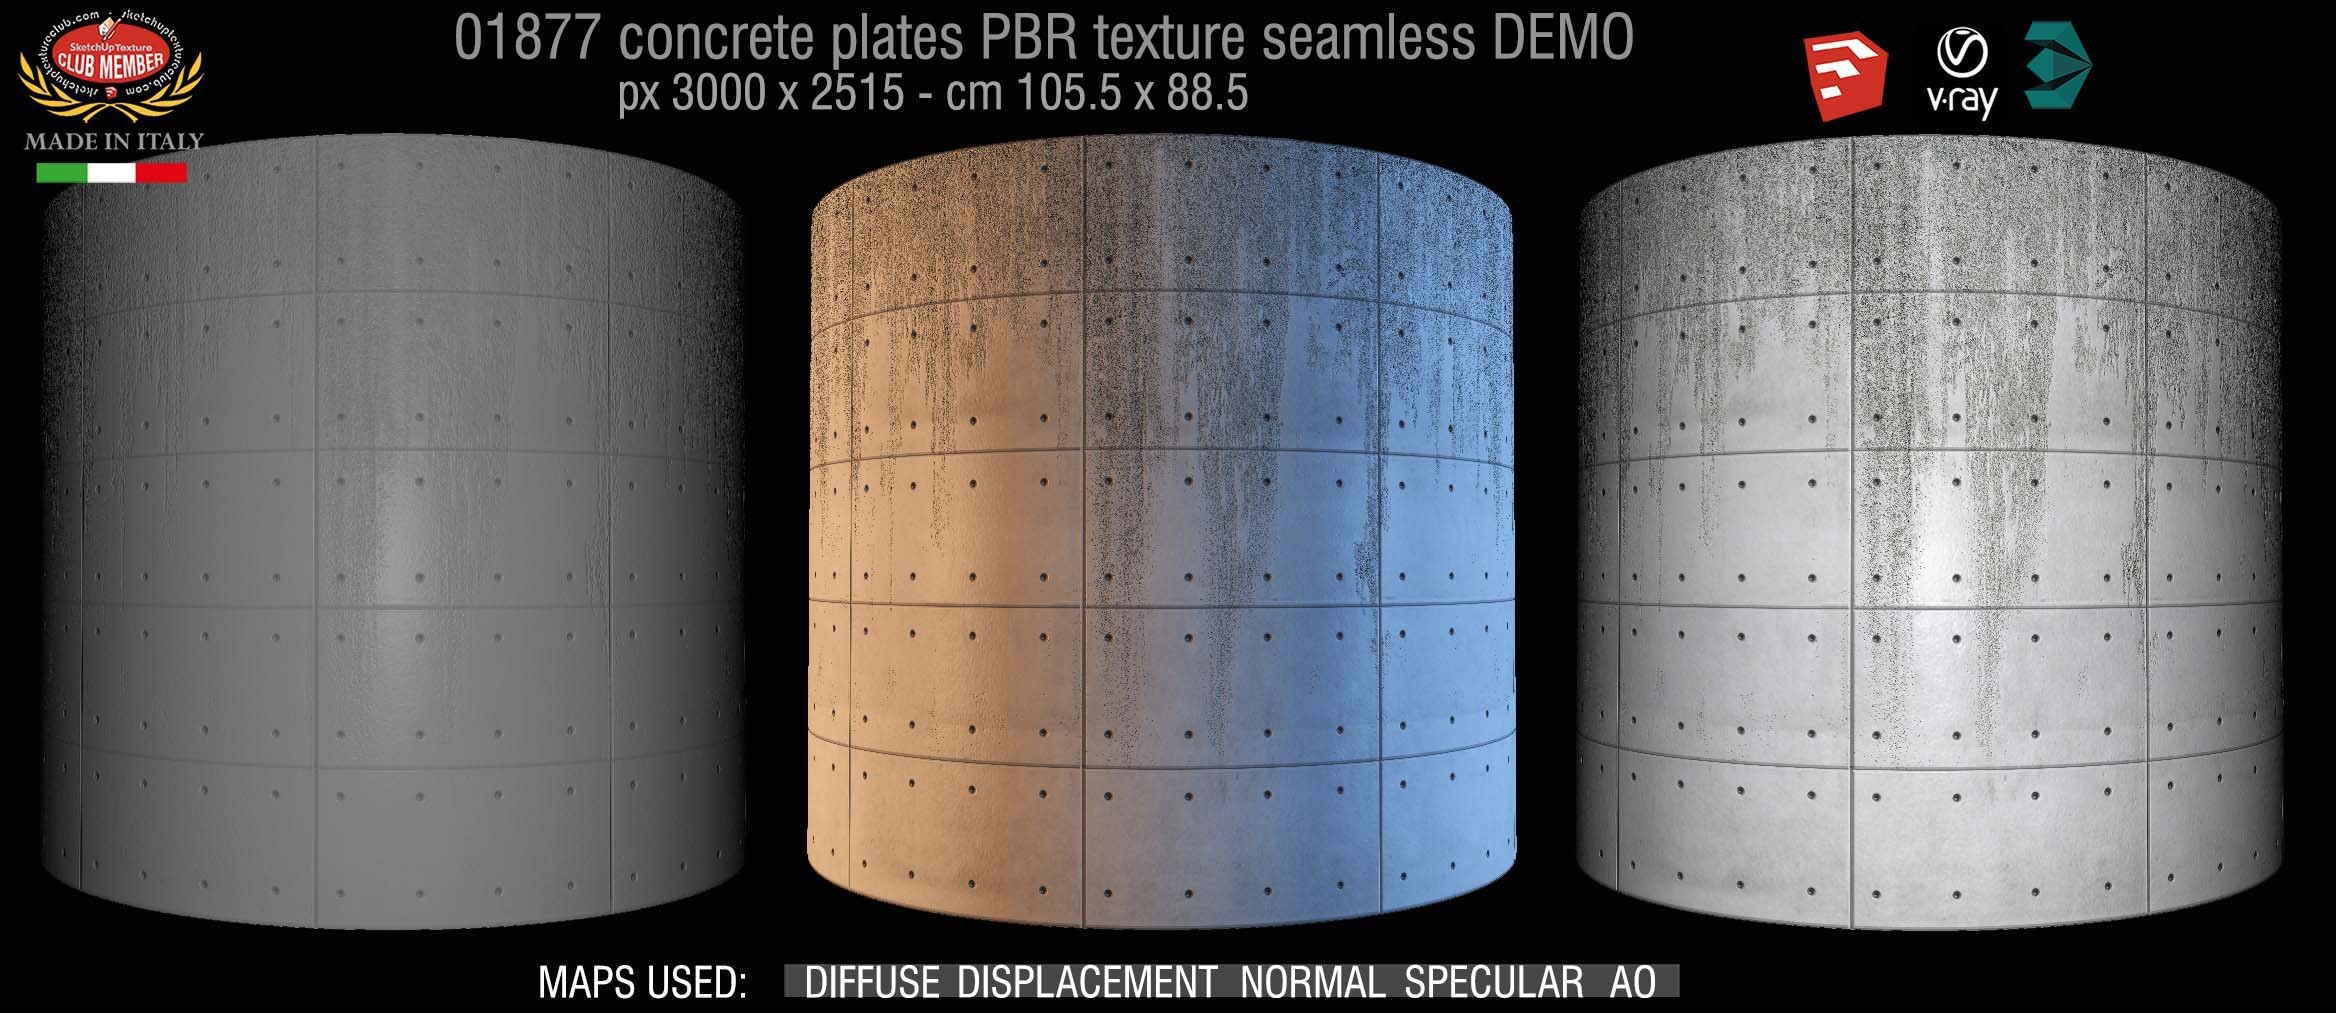 01877 tadao ando concrete plates PBR texture seamless DEMO